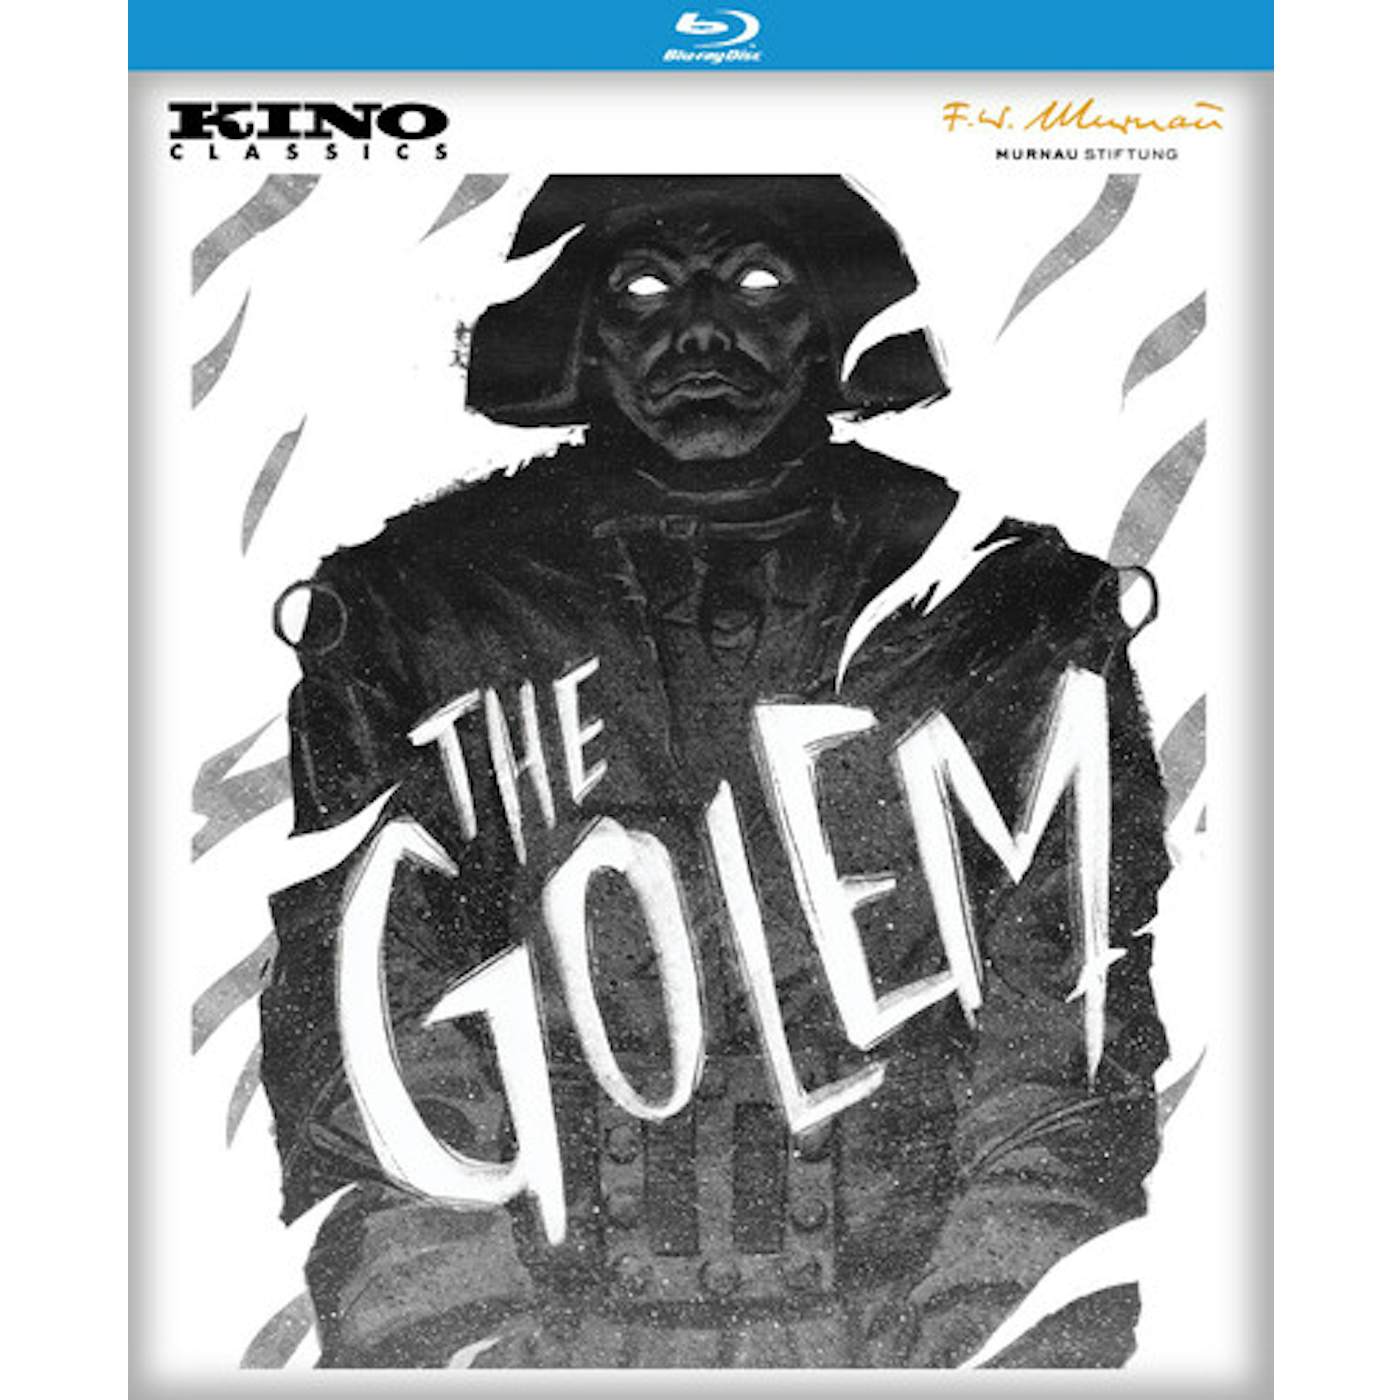 GOLEM (1920) Blu-ray